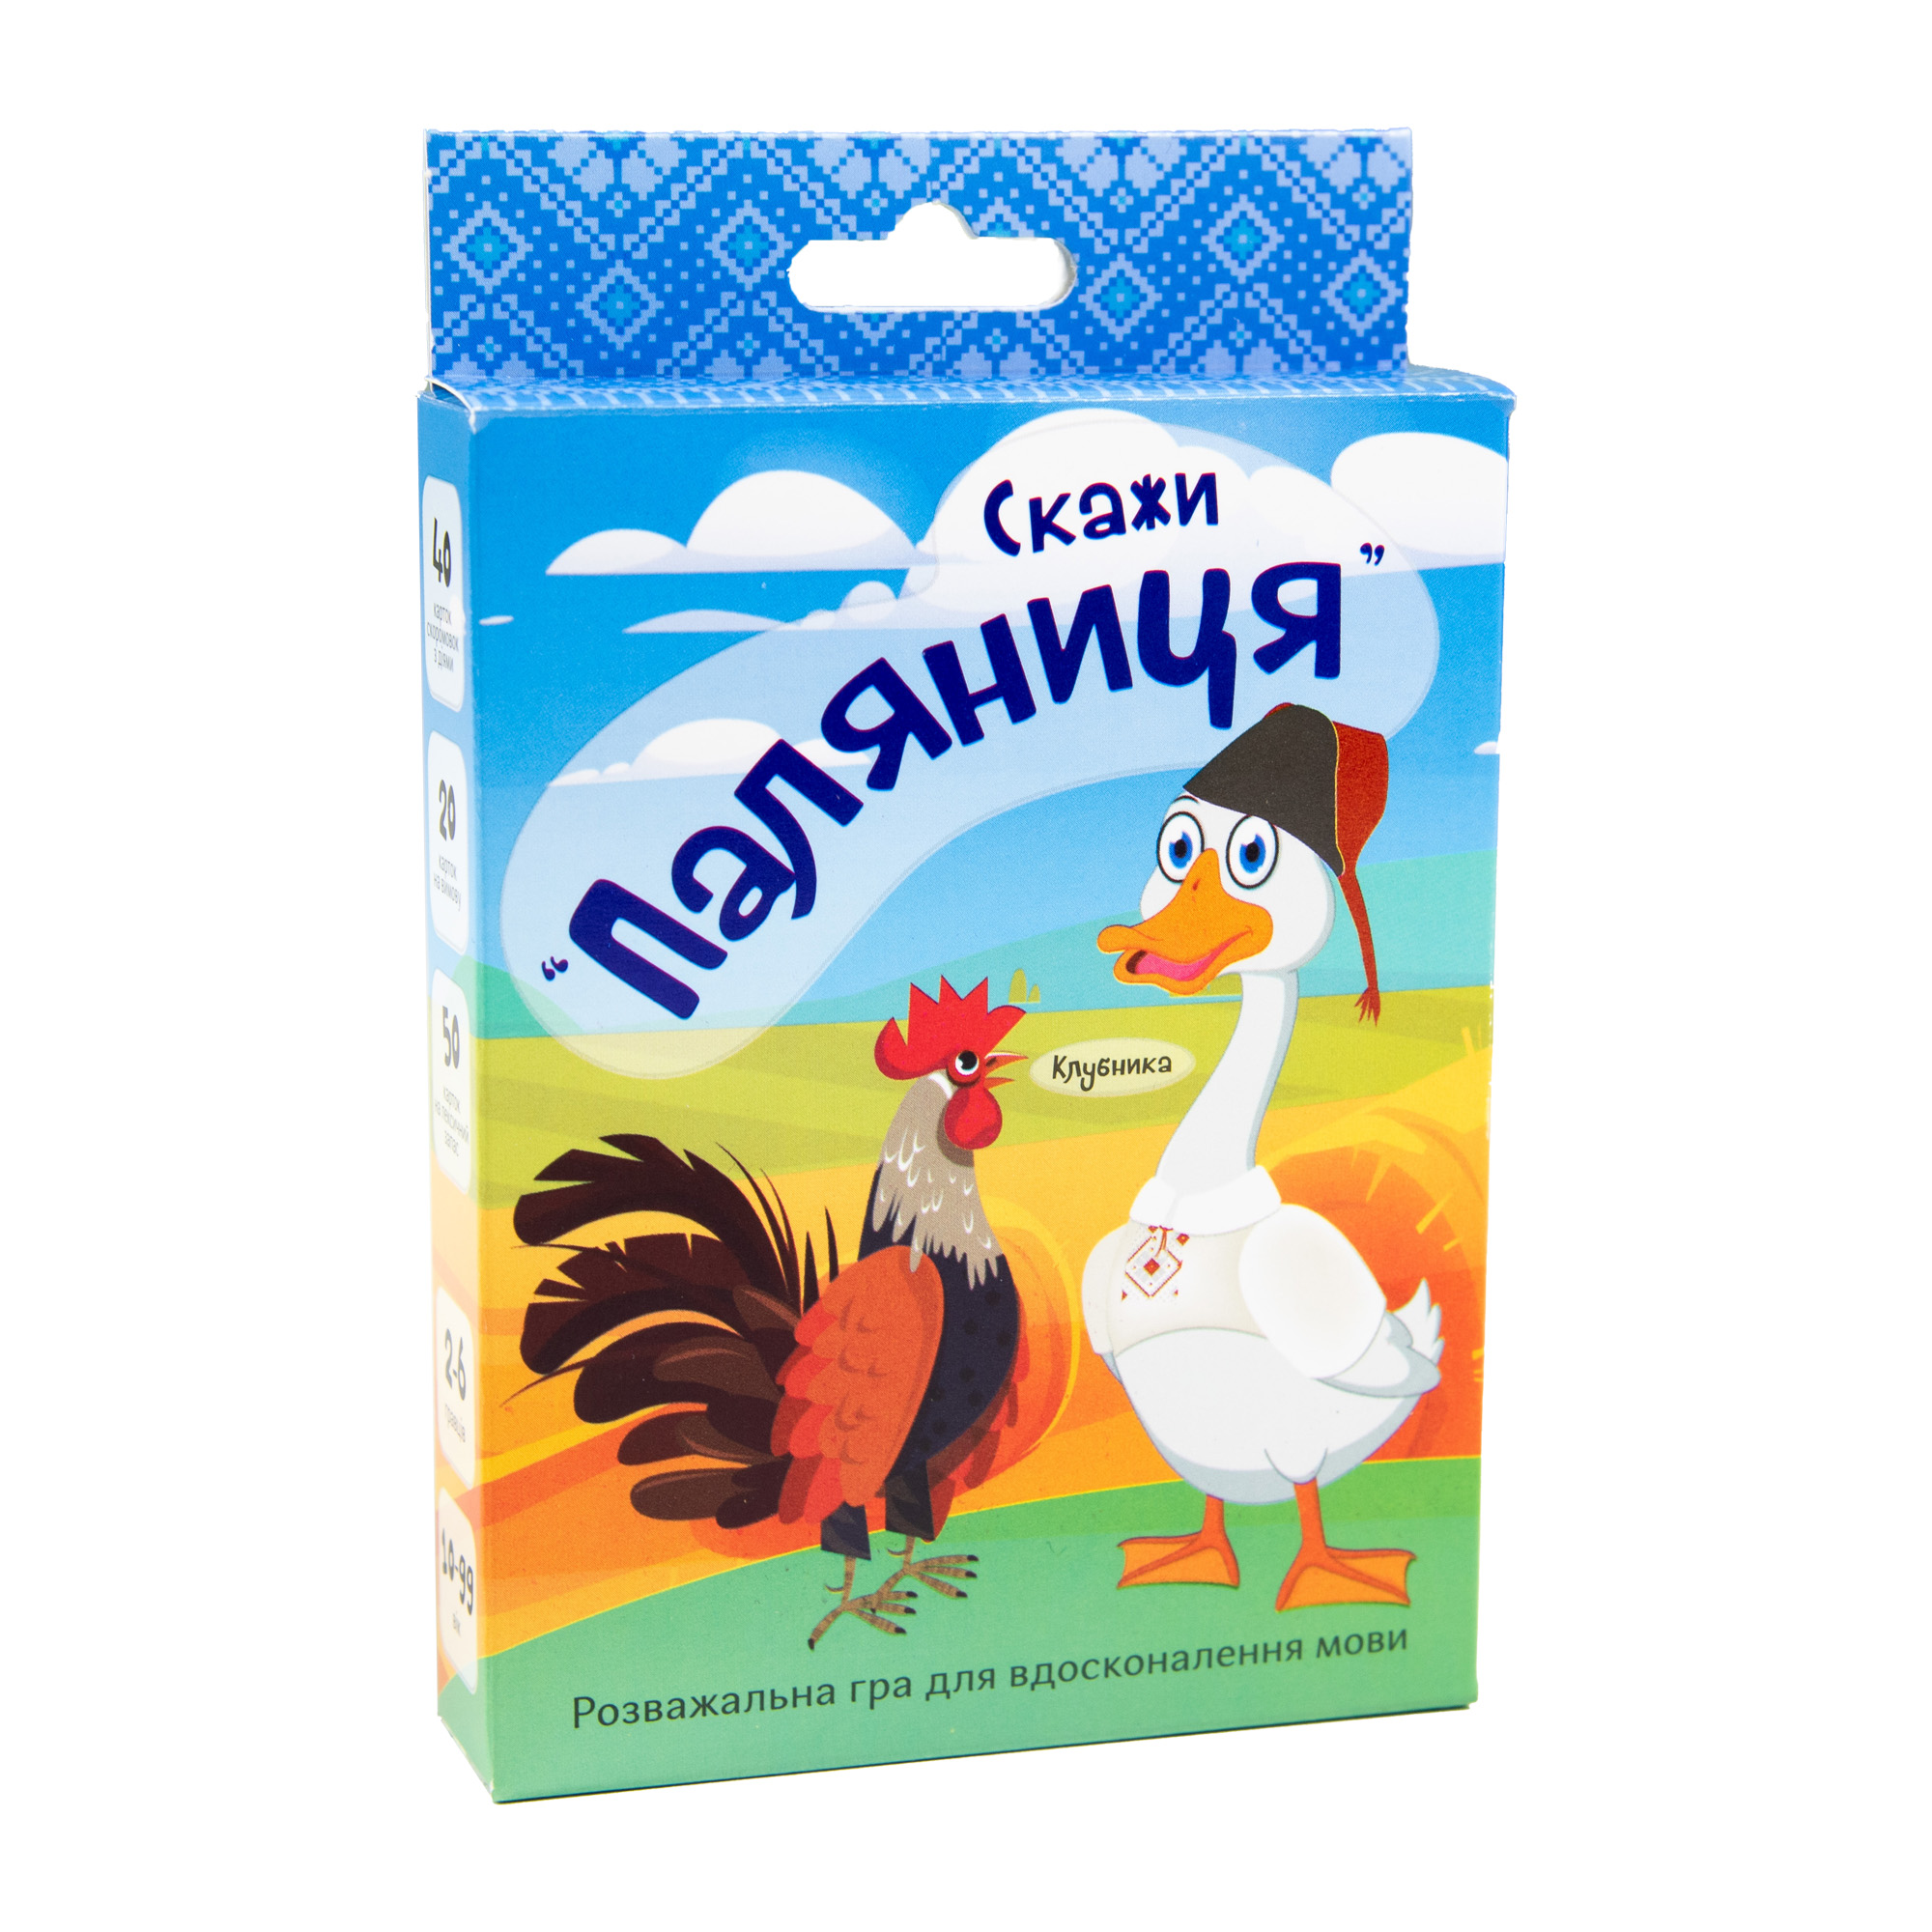 Настільна гра Strateg розважальна карткова гра на знання мови украЇнською мовою Скажи паляниця (30236)